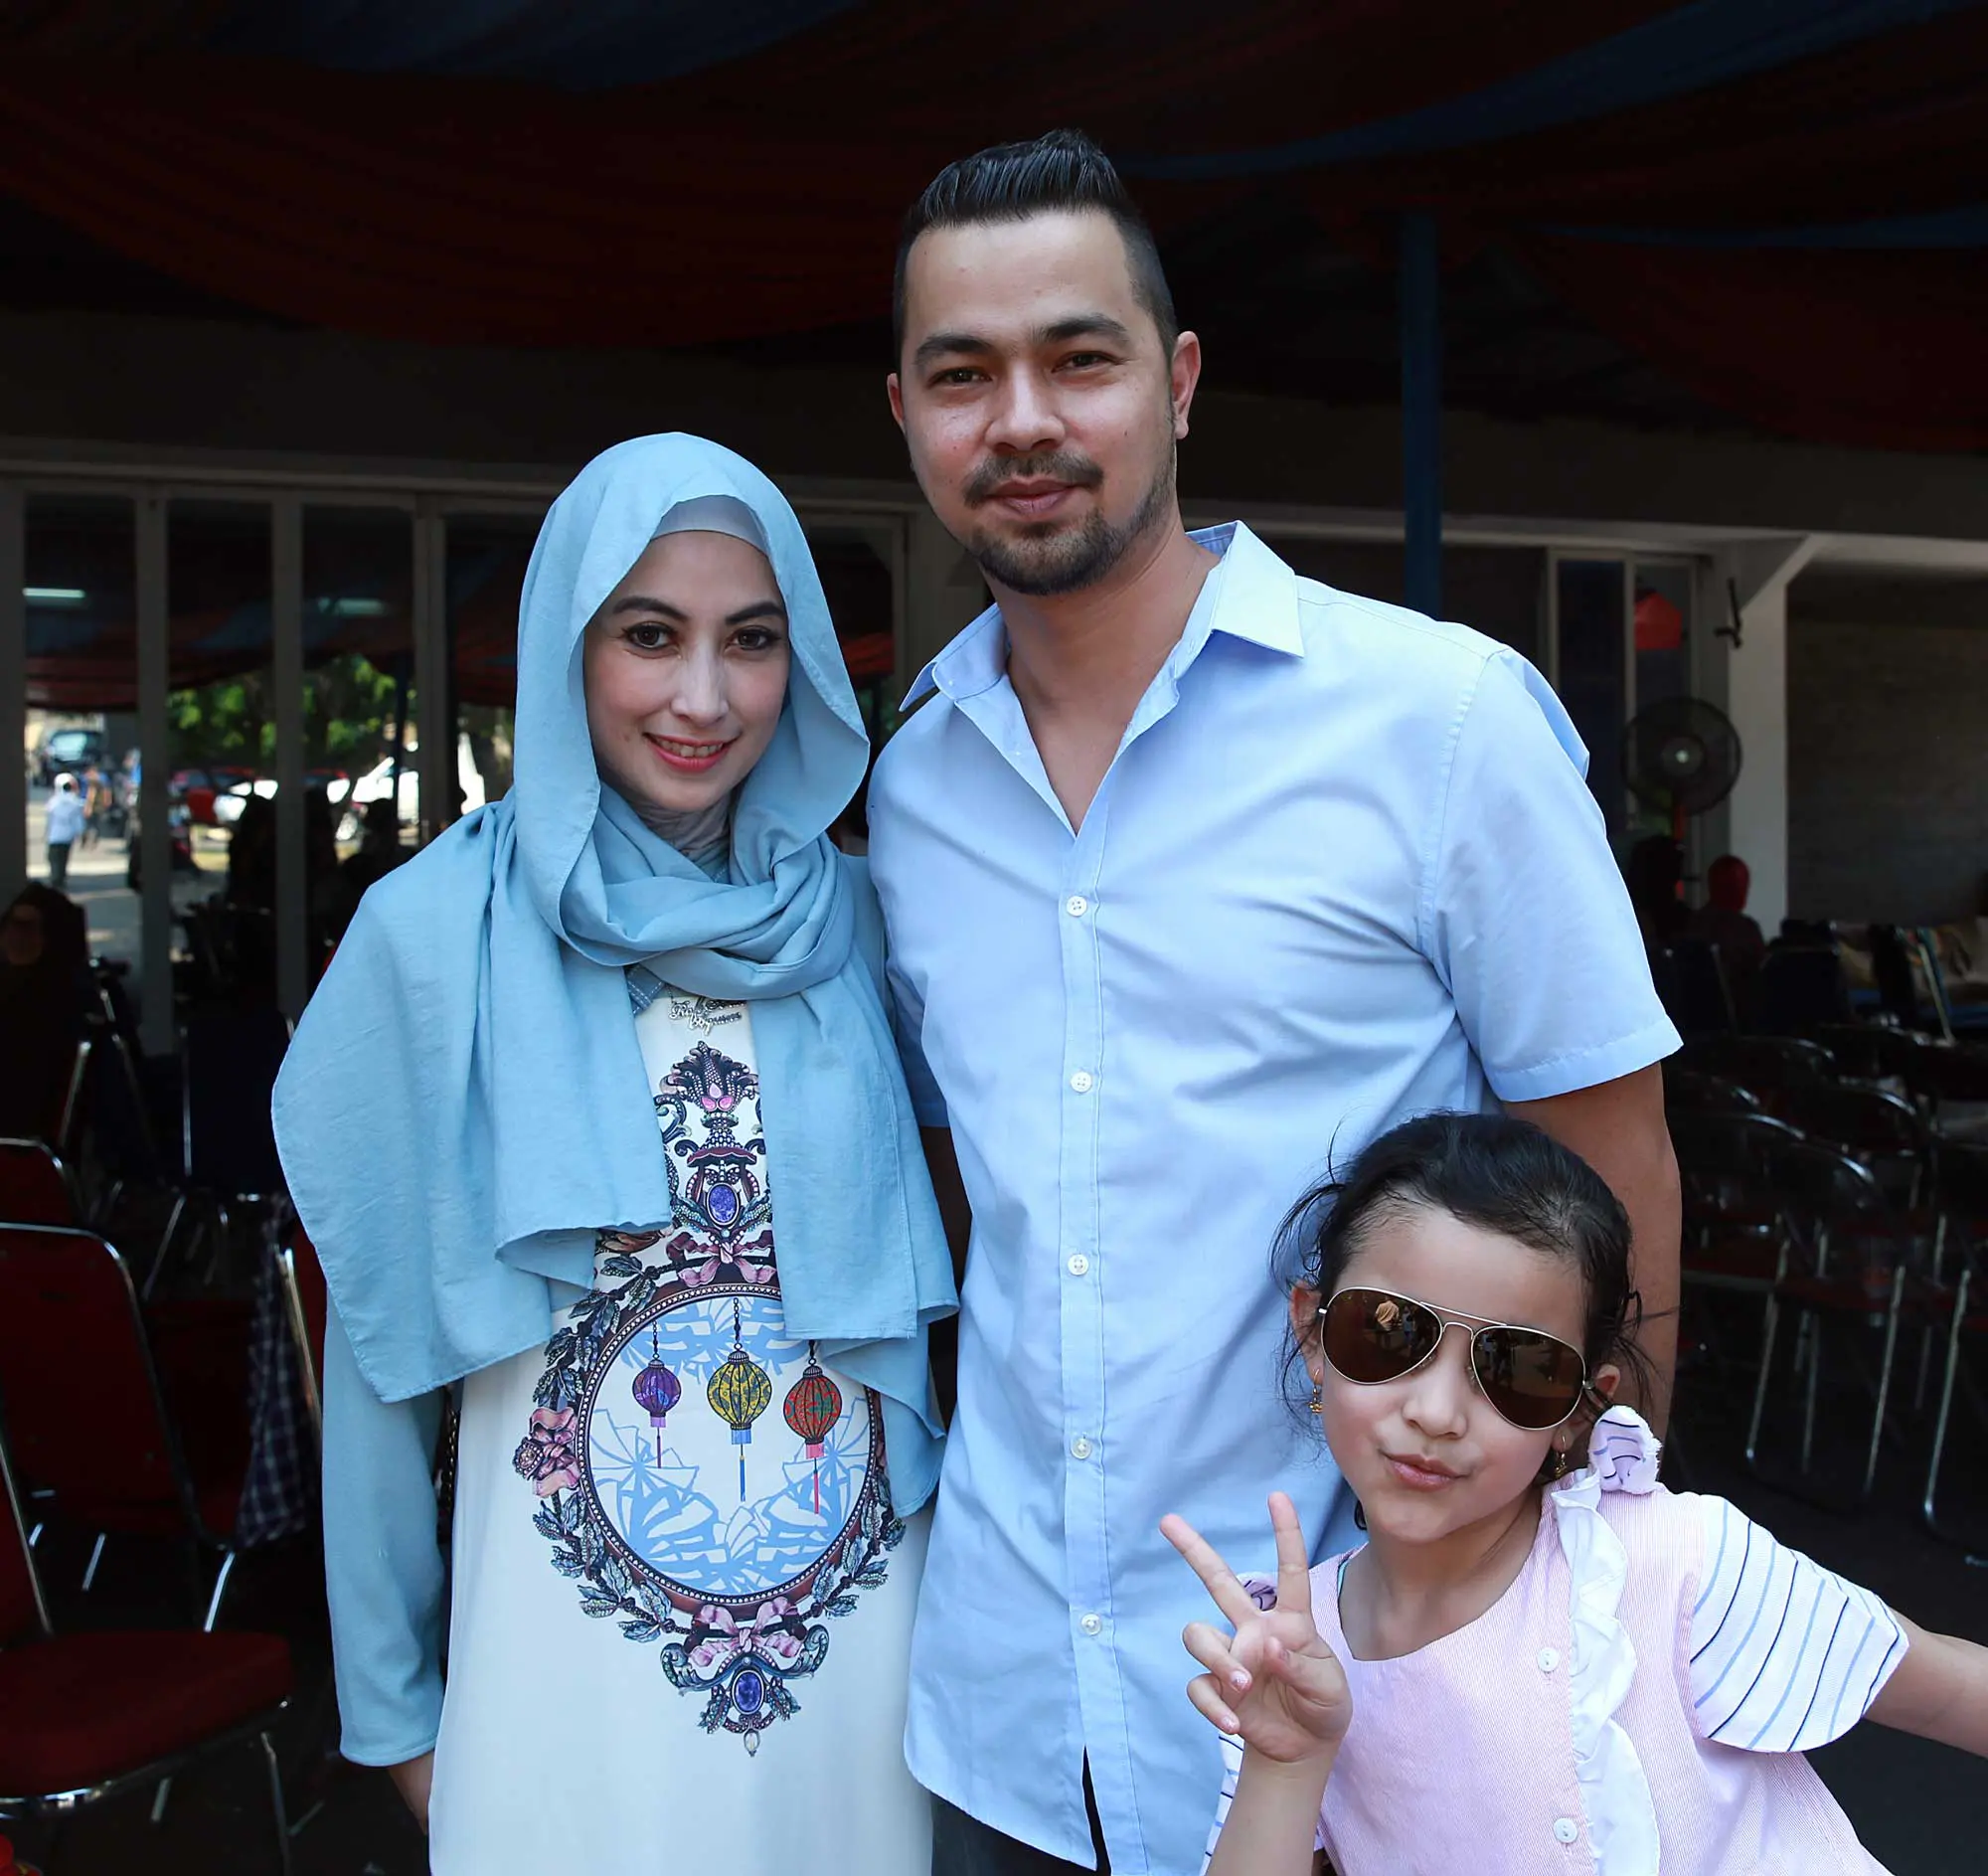 Sultan Djorghi dan keluarga dalam acara halal bihalal 'Tukang Bubur Naik Haji'. Kekeluargaan menjadi satu hal yang begitu terjalin antara pemain dan semua yang terlibat dalam proses produksi. (Deki Prayoga/Bintang.com)